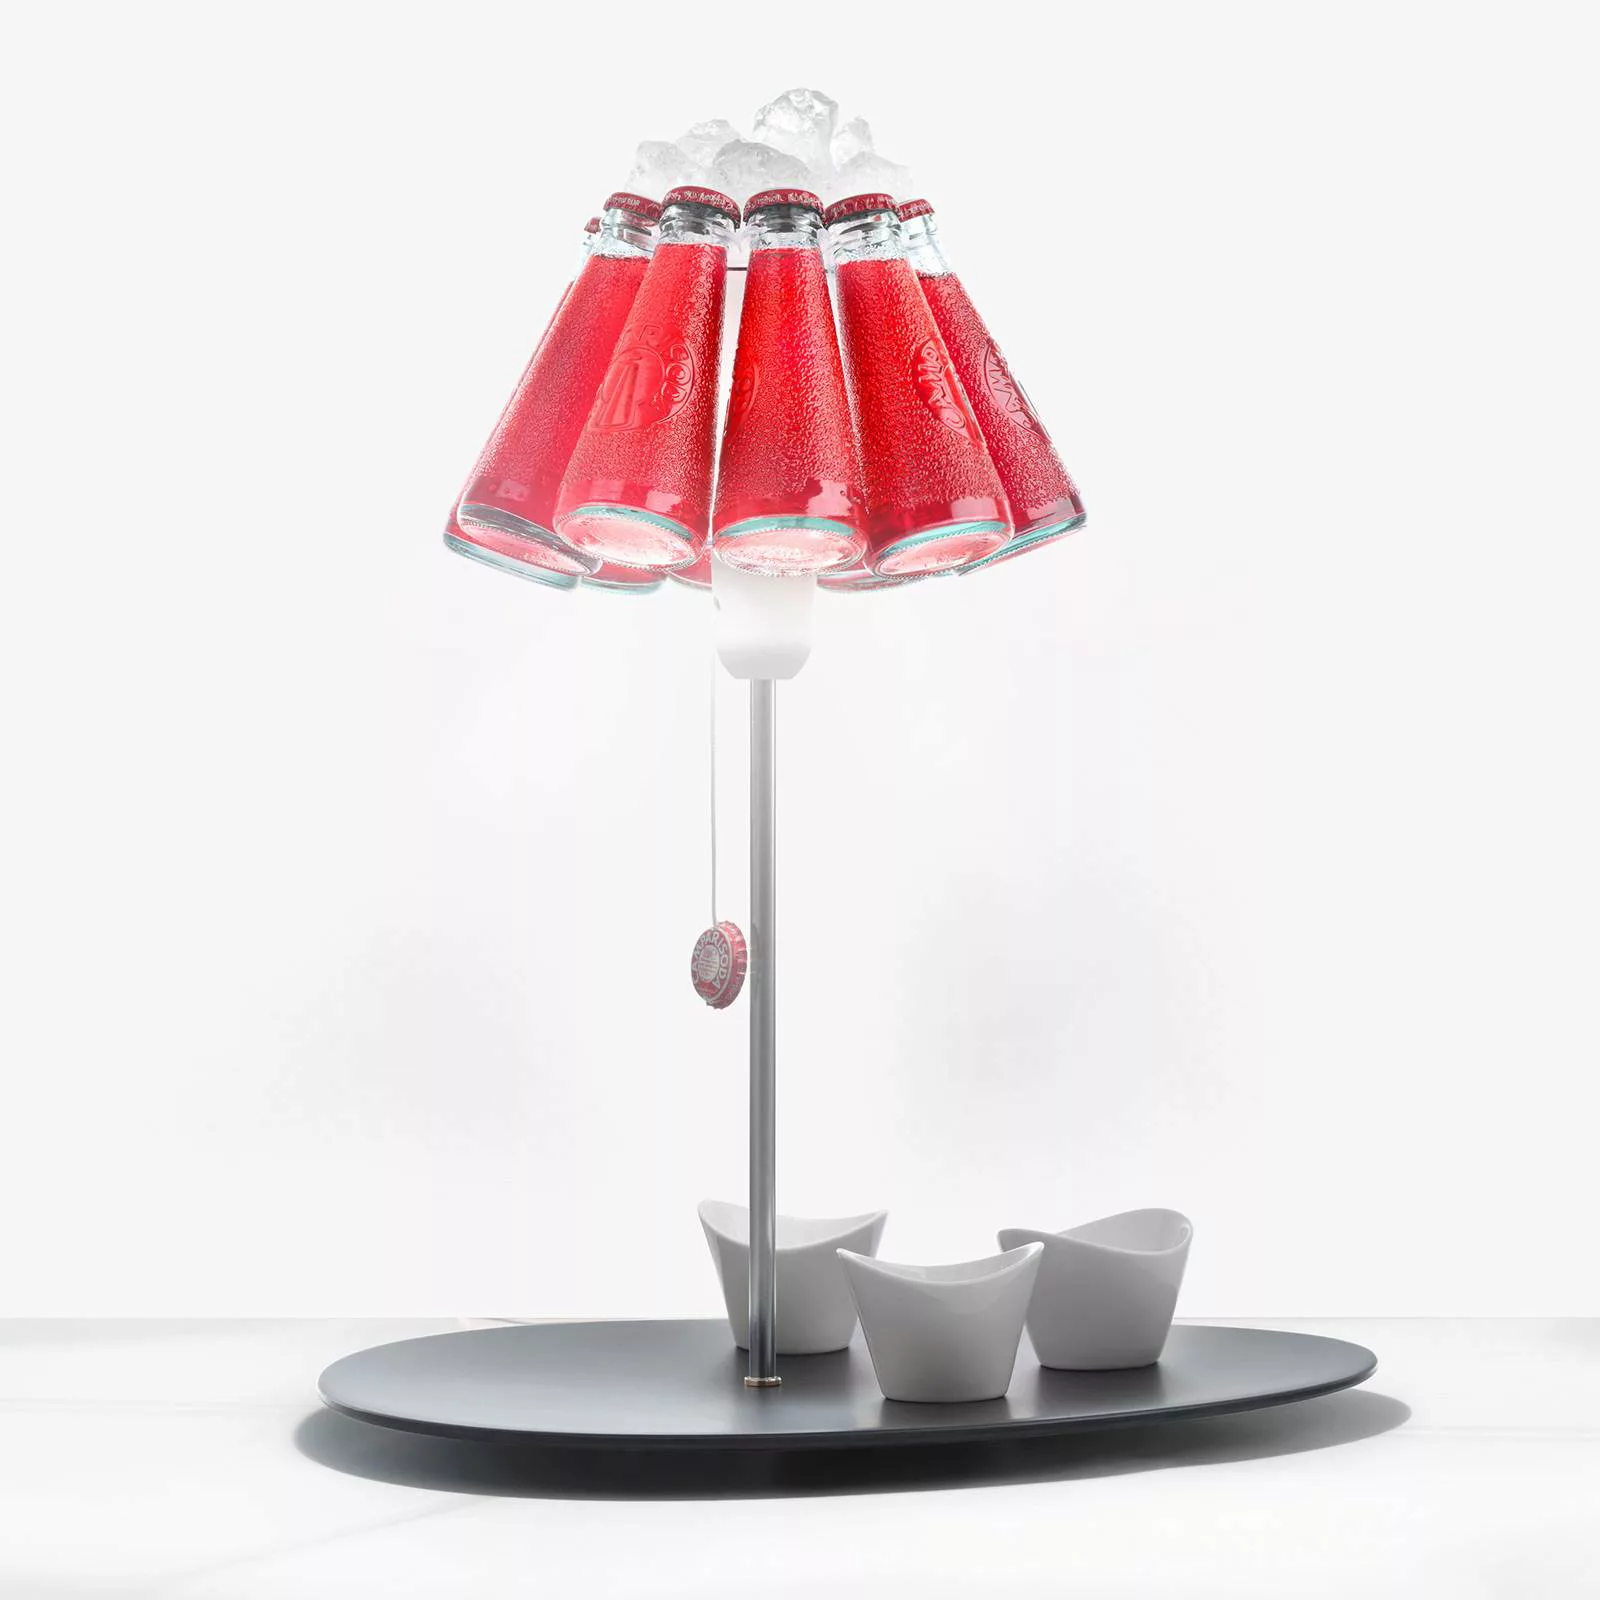 Tischleuchte Campari Bar metall glas rot schwarz / H 50 cm - Ingo Maurer - günstig online kaufen